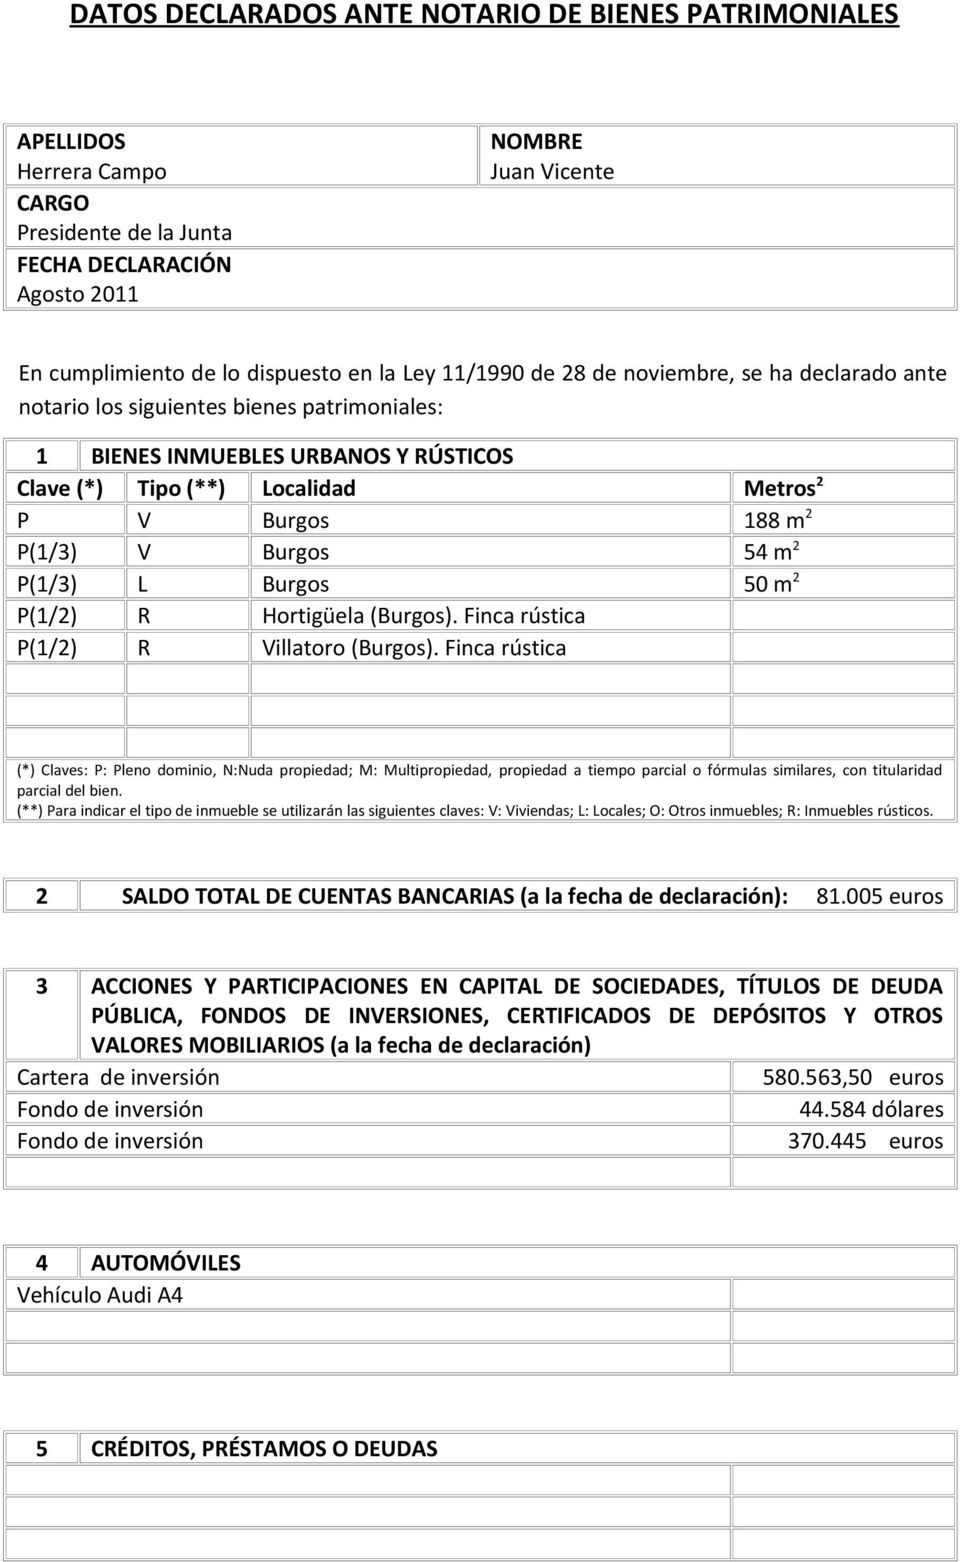 Finca rústica P(1/2) R Villatoro (Burgos). Finca rústica 2 SALDO TOTAL DE CUENTAS BANCARIAS (a la fecha de declaración): 81.